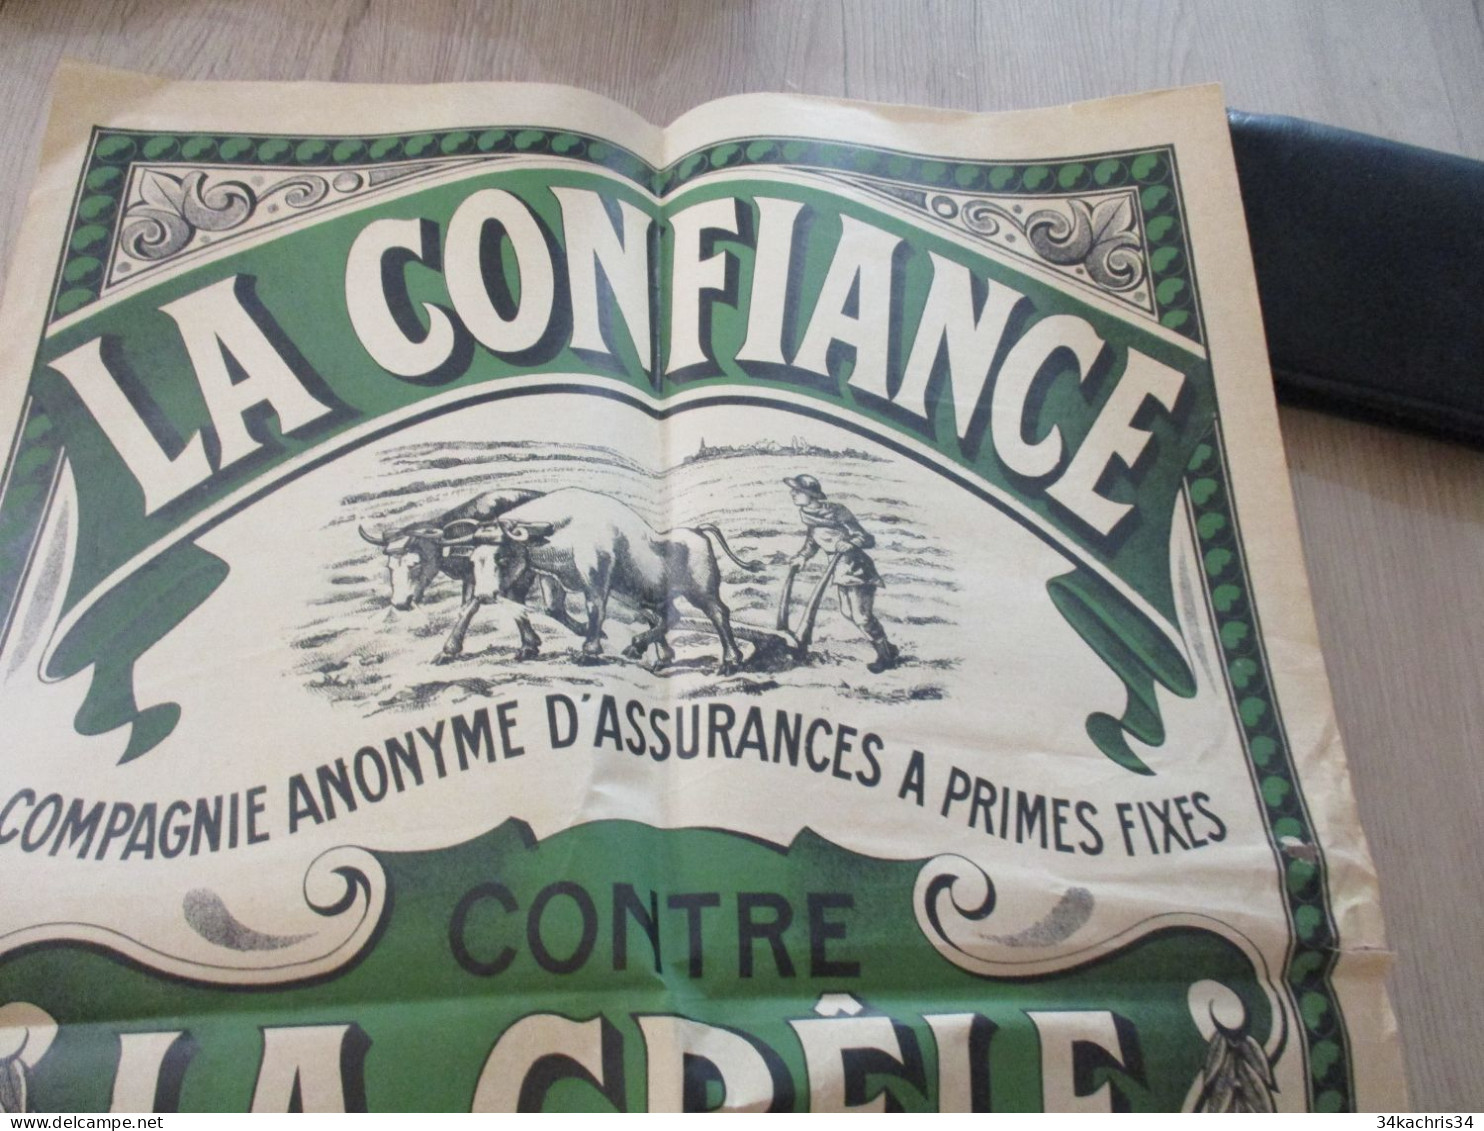 M45 Affiche Originale 80X 100 Environs Assurance La Confiance Paris Vers 1920 - Afiches